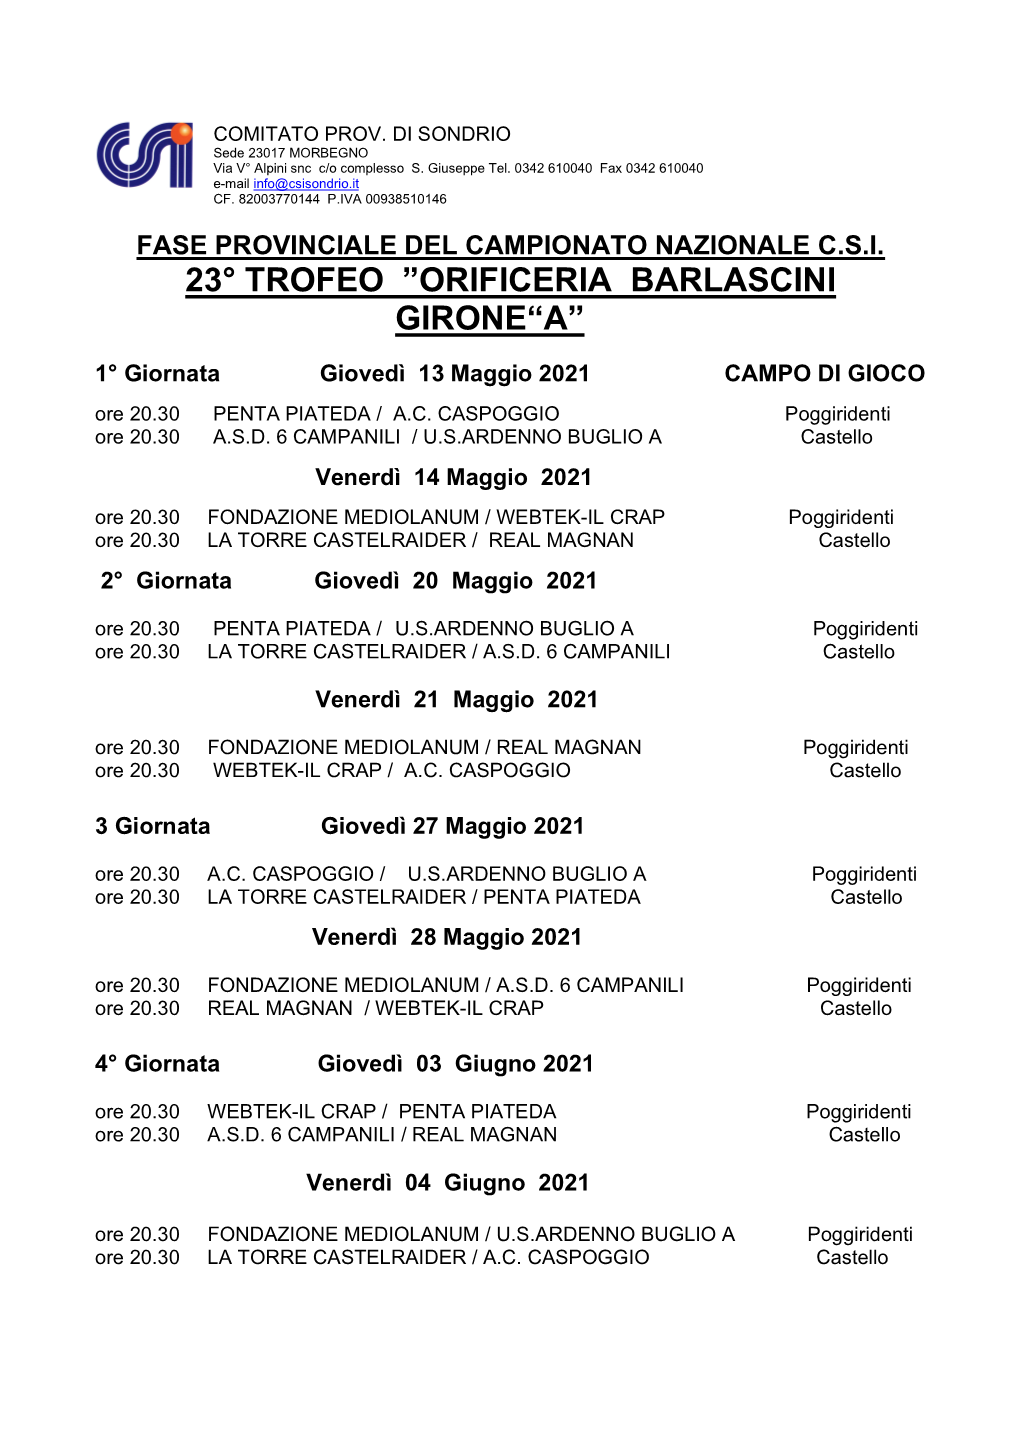 23° Trofeo ”Orificeria Barlascini Girone“A”